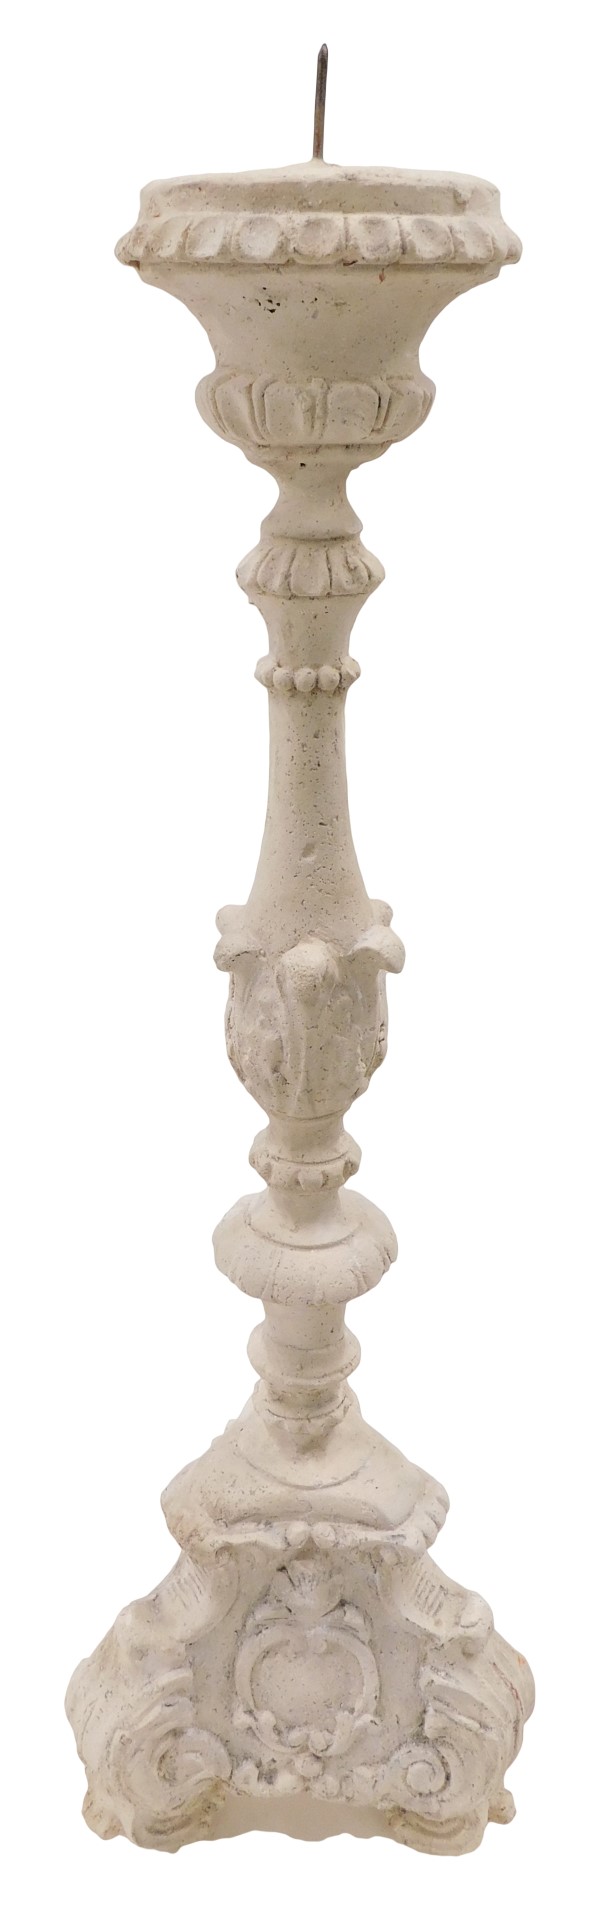 An unglazed terracotta Italian style altar candlestick, 60cm high.